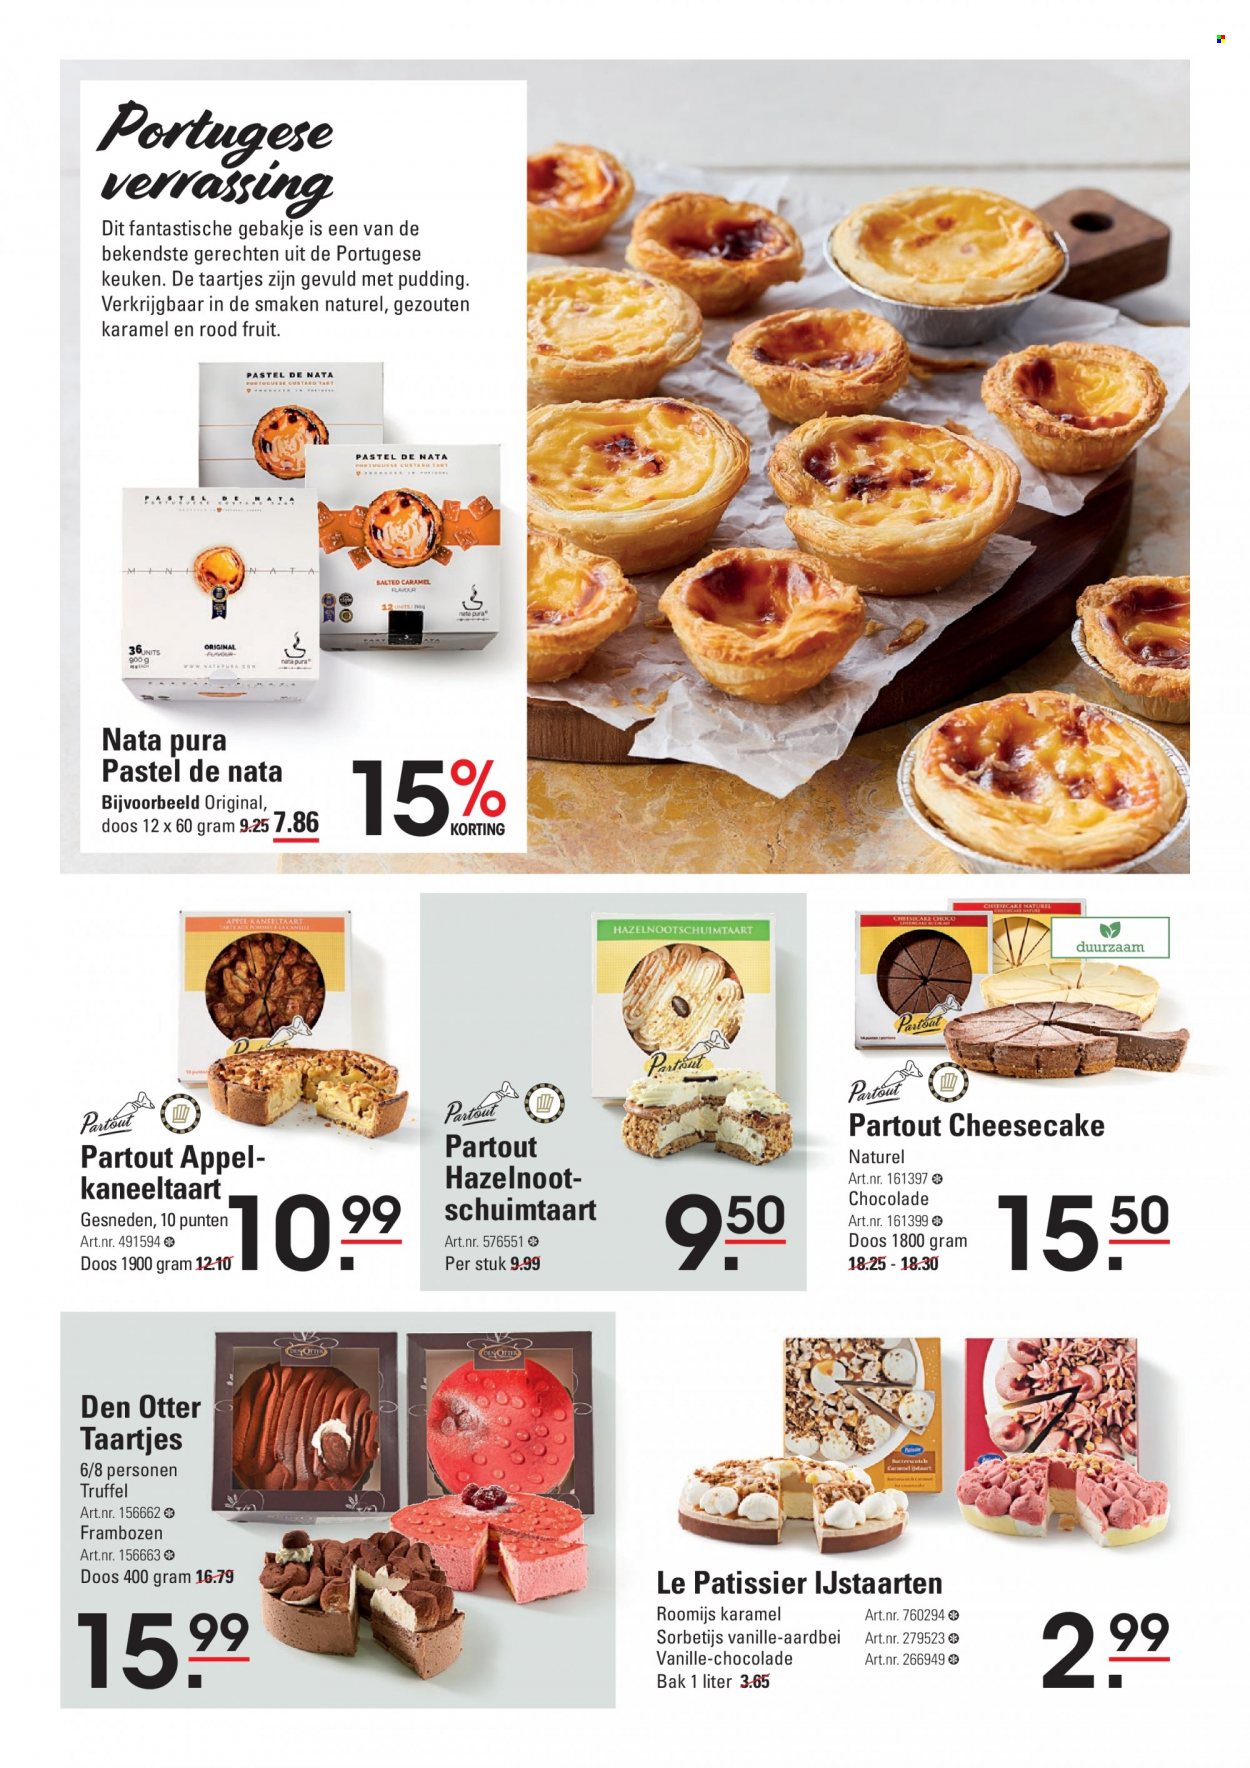 thumbnail - Sligro-aanbieding - 23-3-2023 - 10-4-2023 -  producten in de aanbieding - truffel, rode vruchten, frambozen, roomijs, sorbetijs, chocolade. Pagina 18.